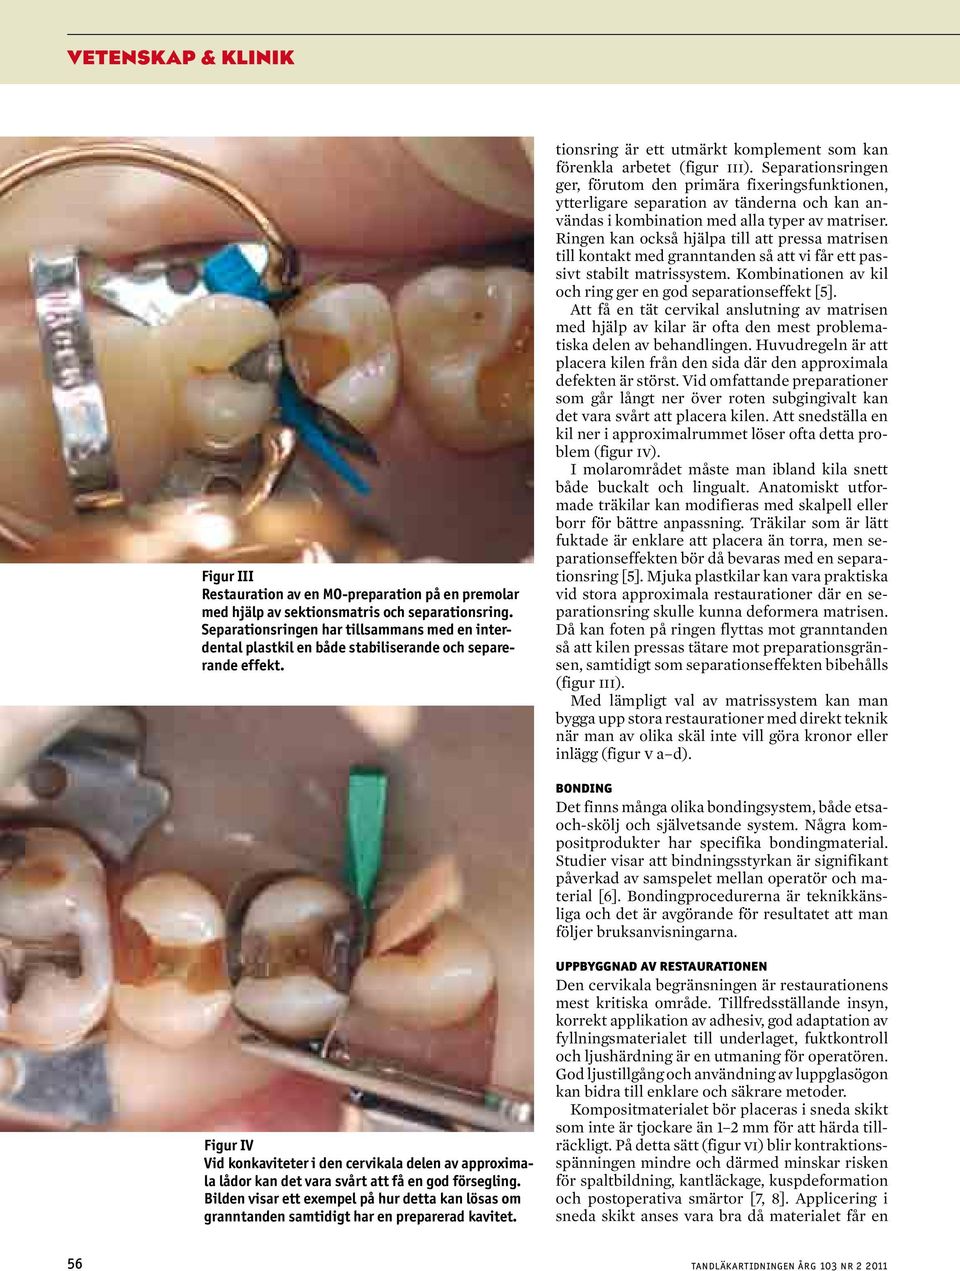 Separationsringen ger, förutom den primära fixeringsfunktionen, ytterligare separation av tänderna och kan användas i kombination med alla typer av matriser.